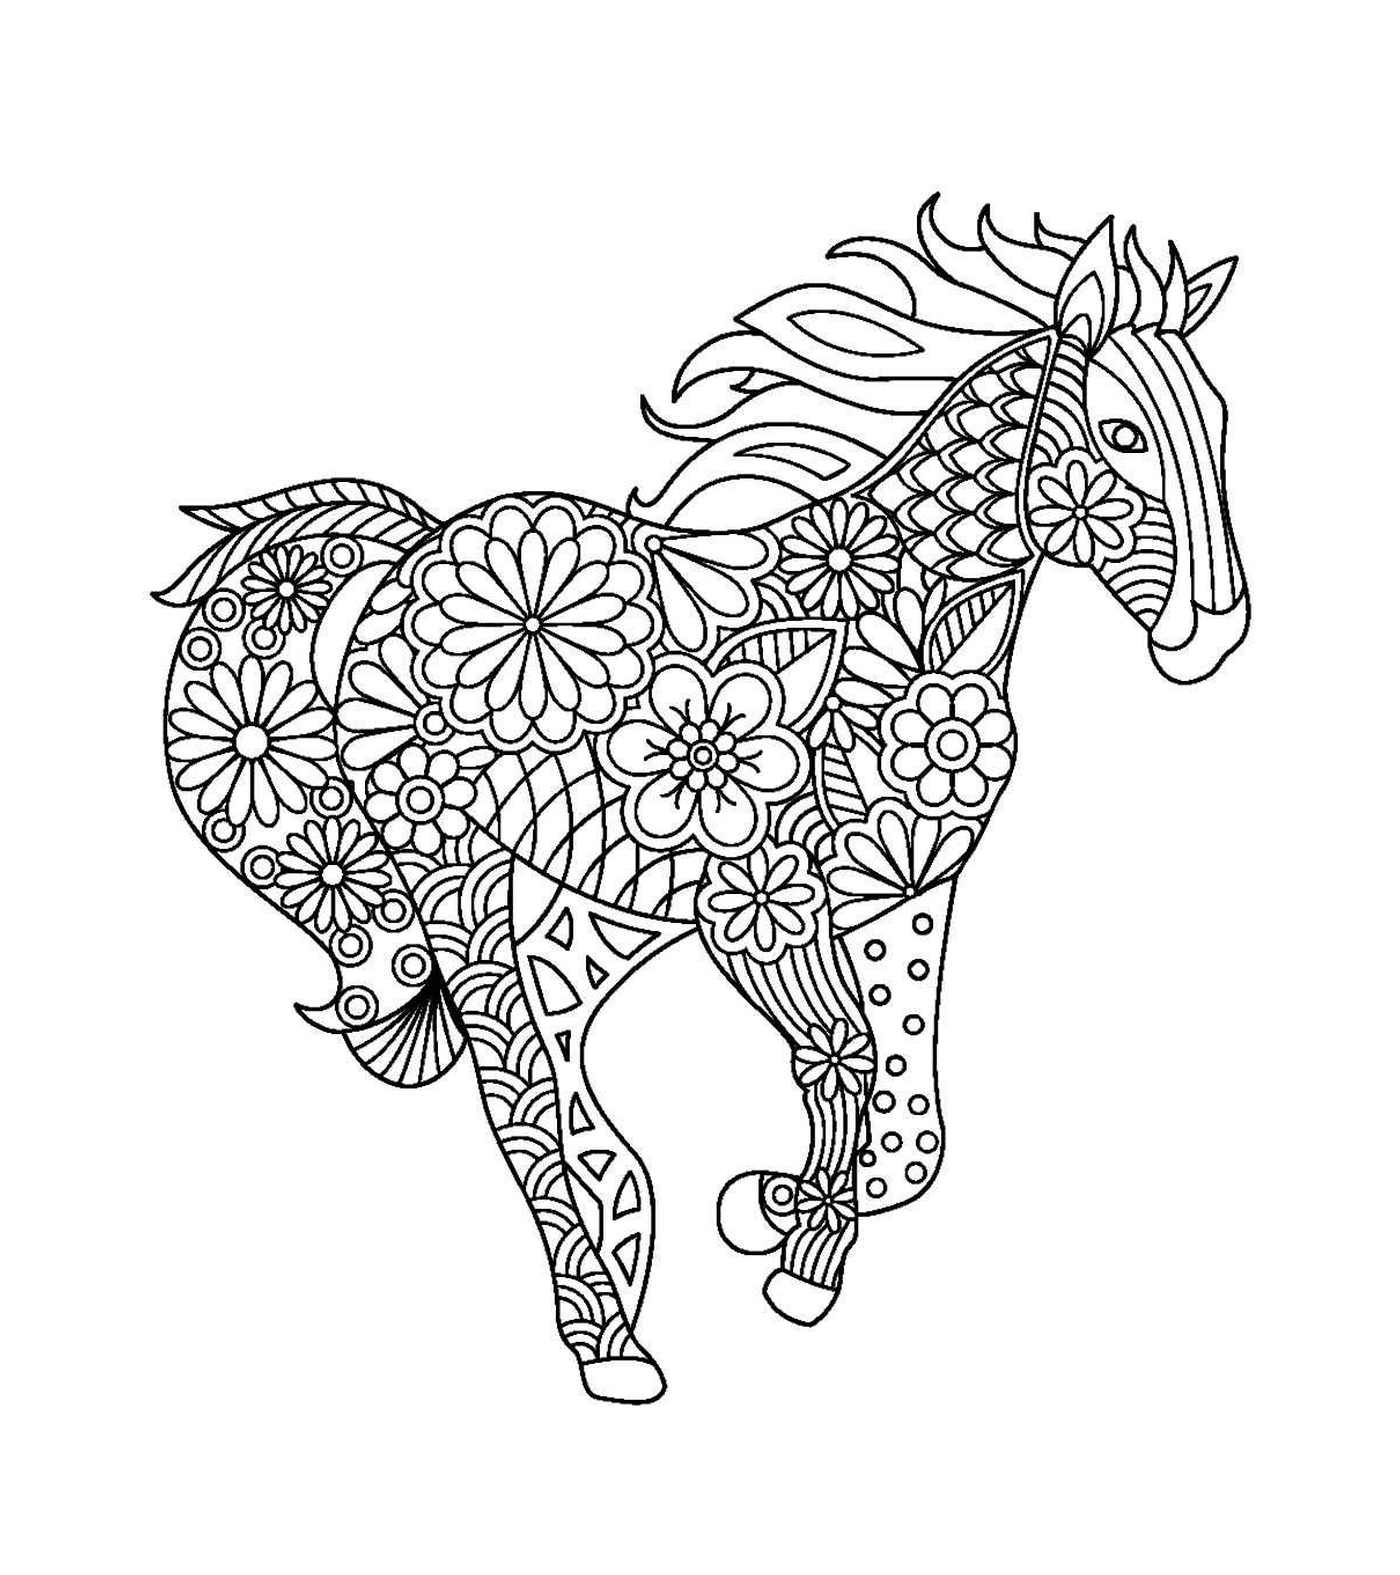  Ein Erwachsener eines Pferdes mit floralen Mustern 